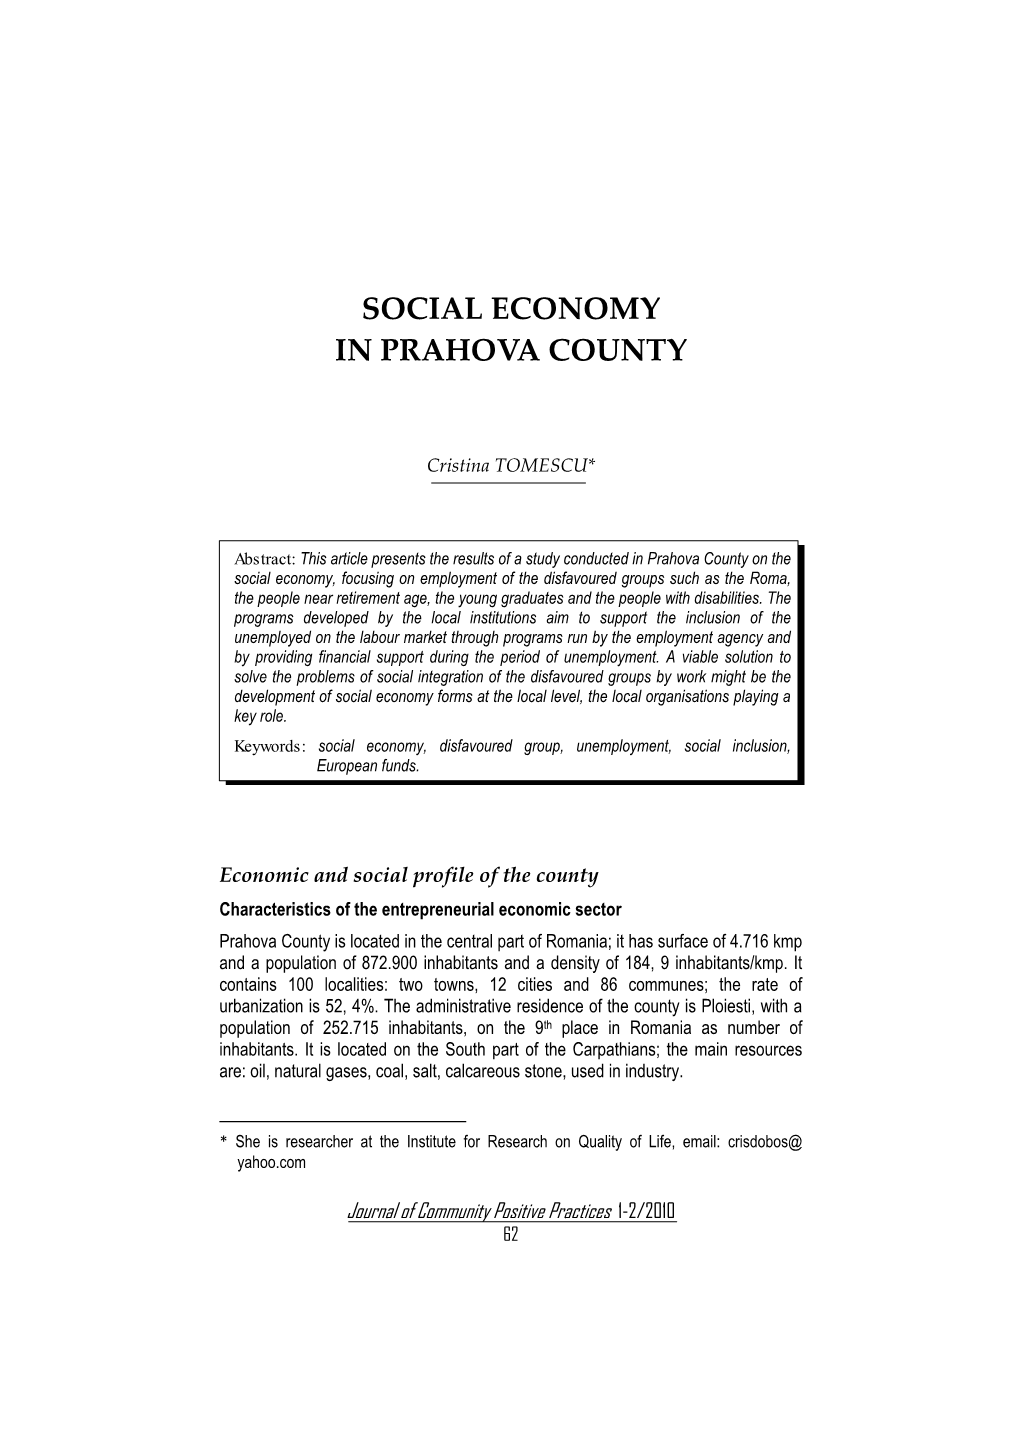 Social Economy in Prahova County